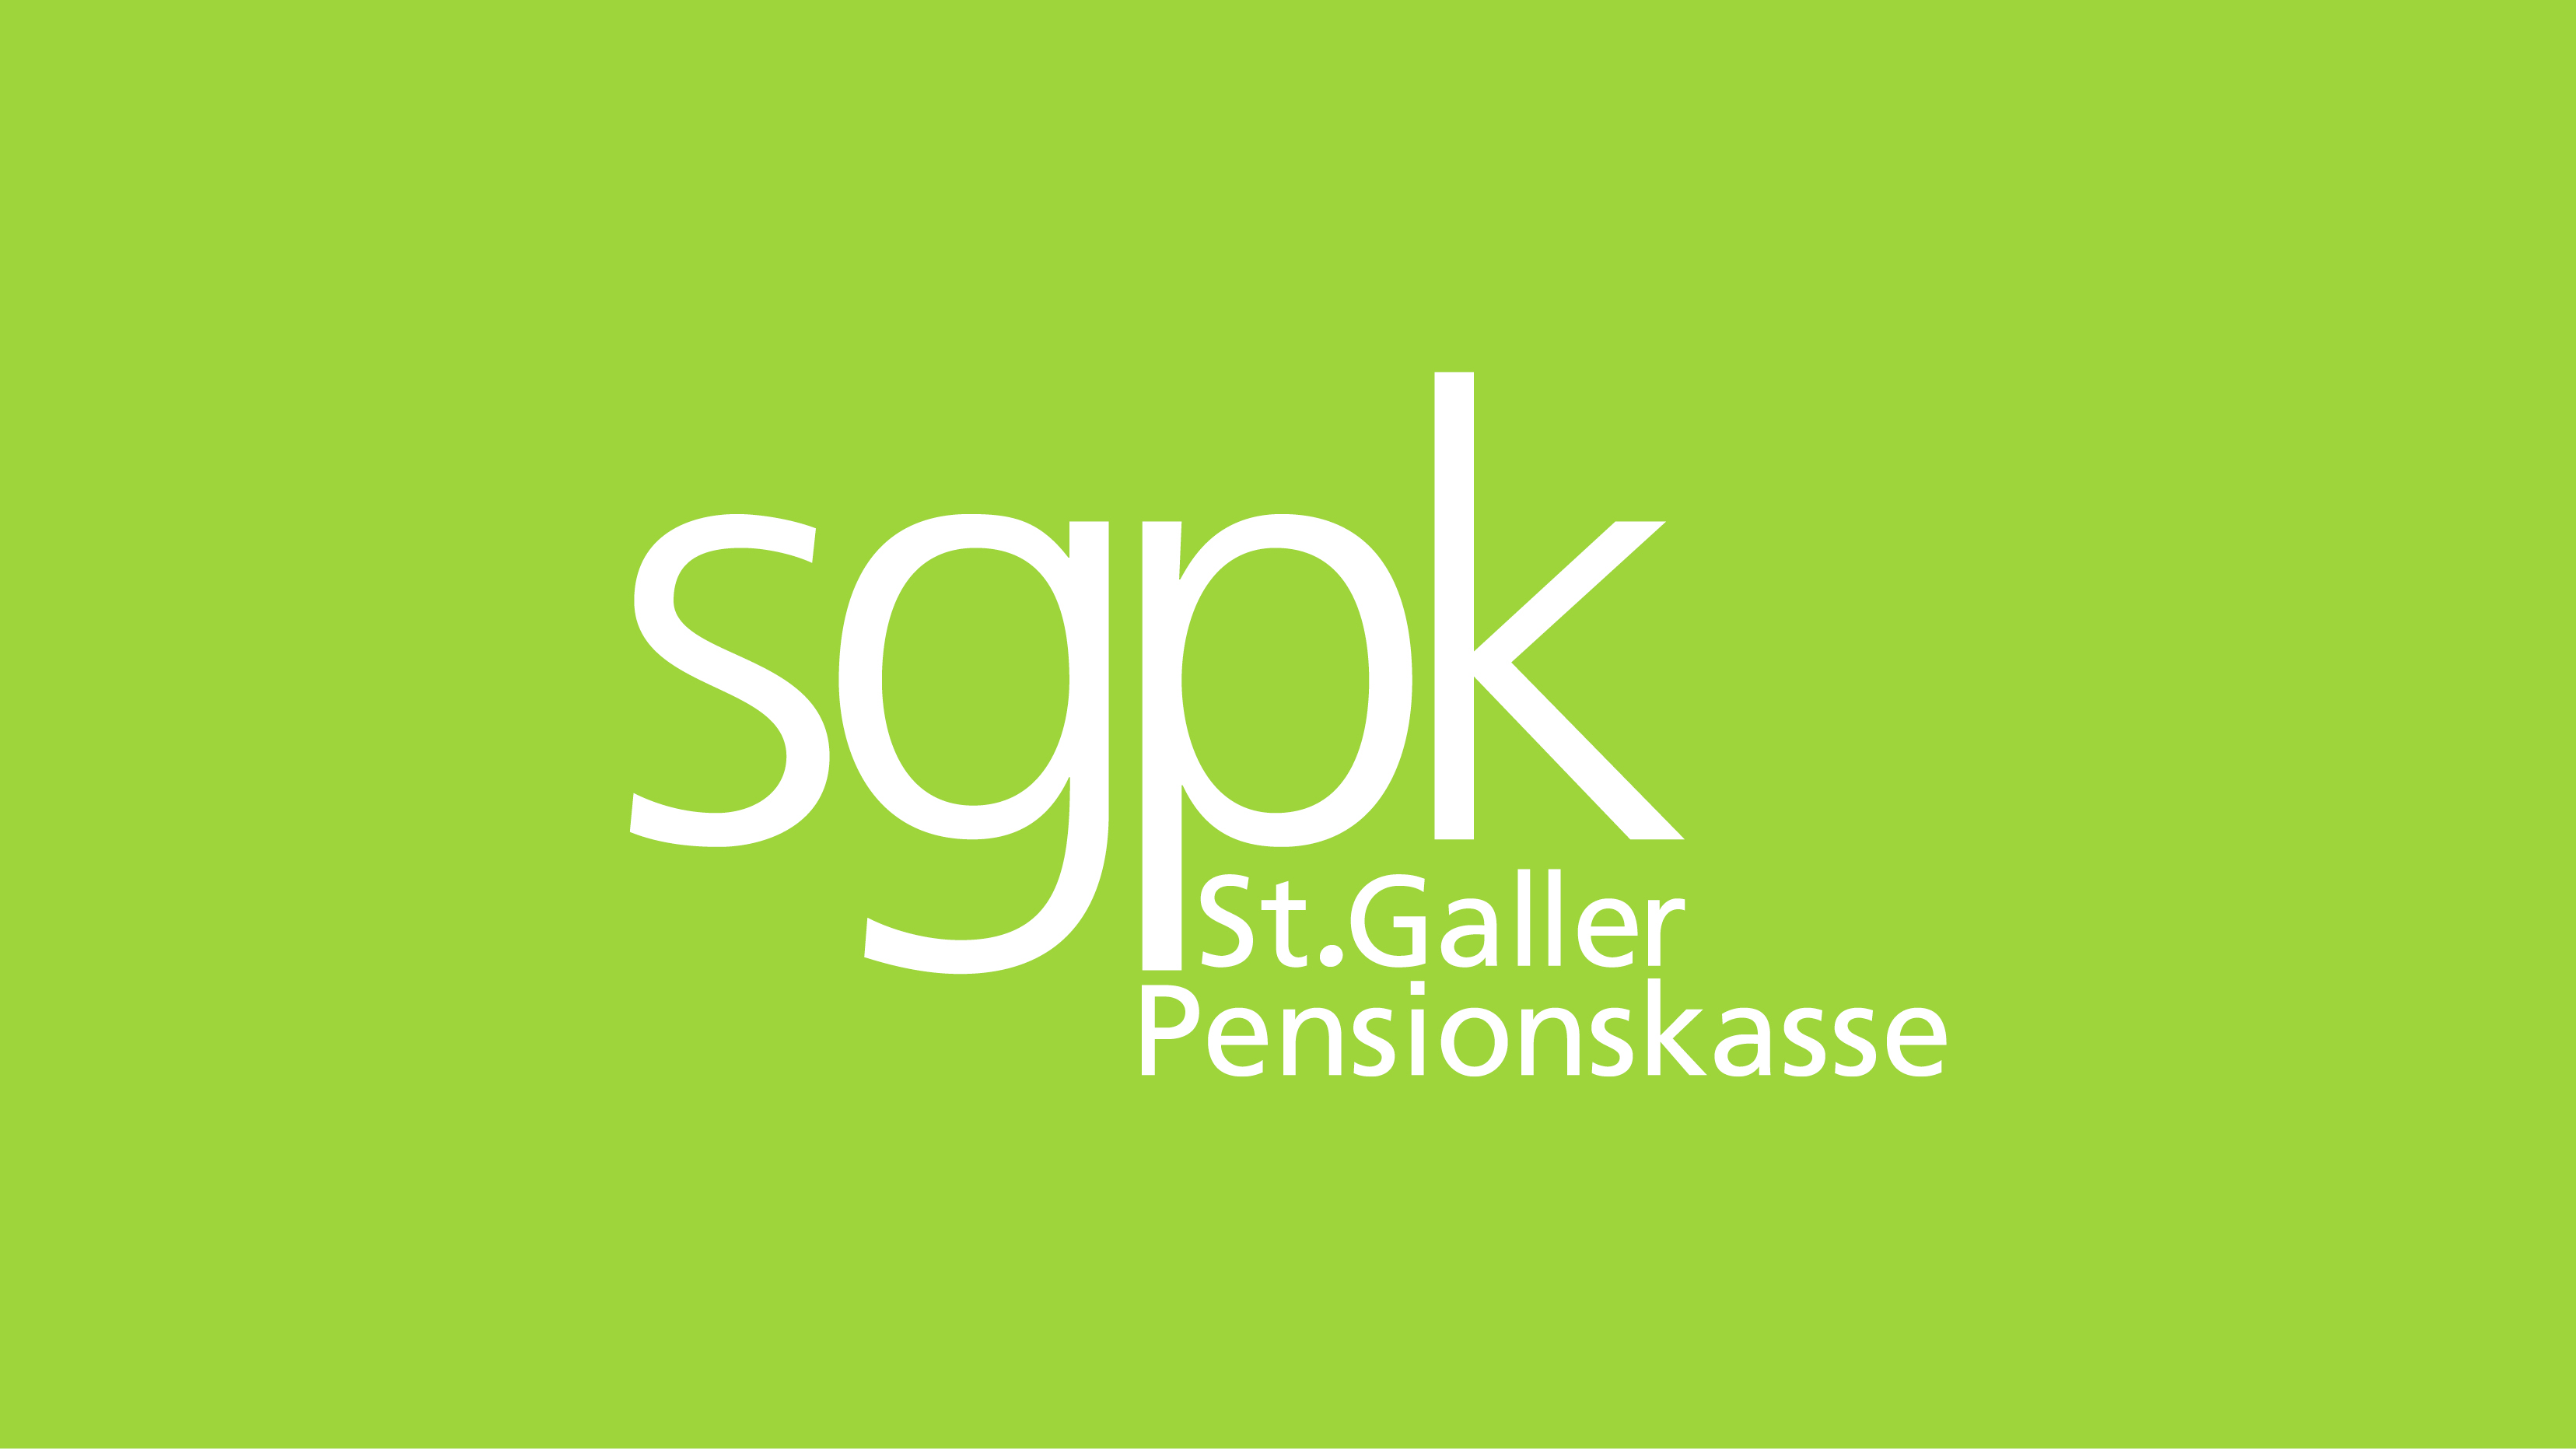 St.Galler Pensionskasse